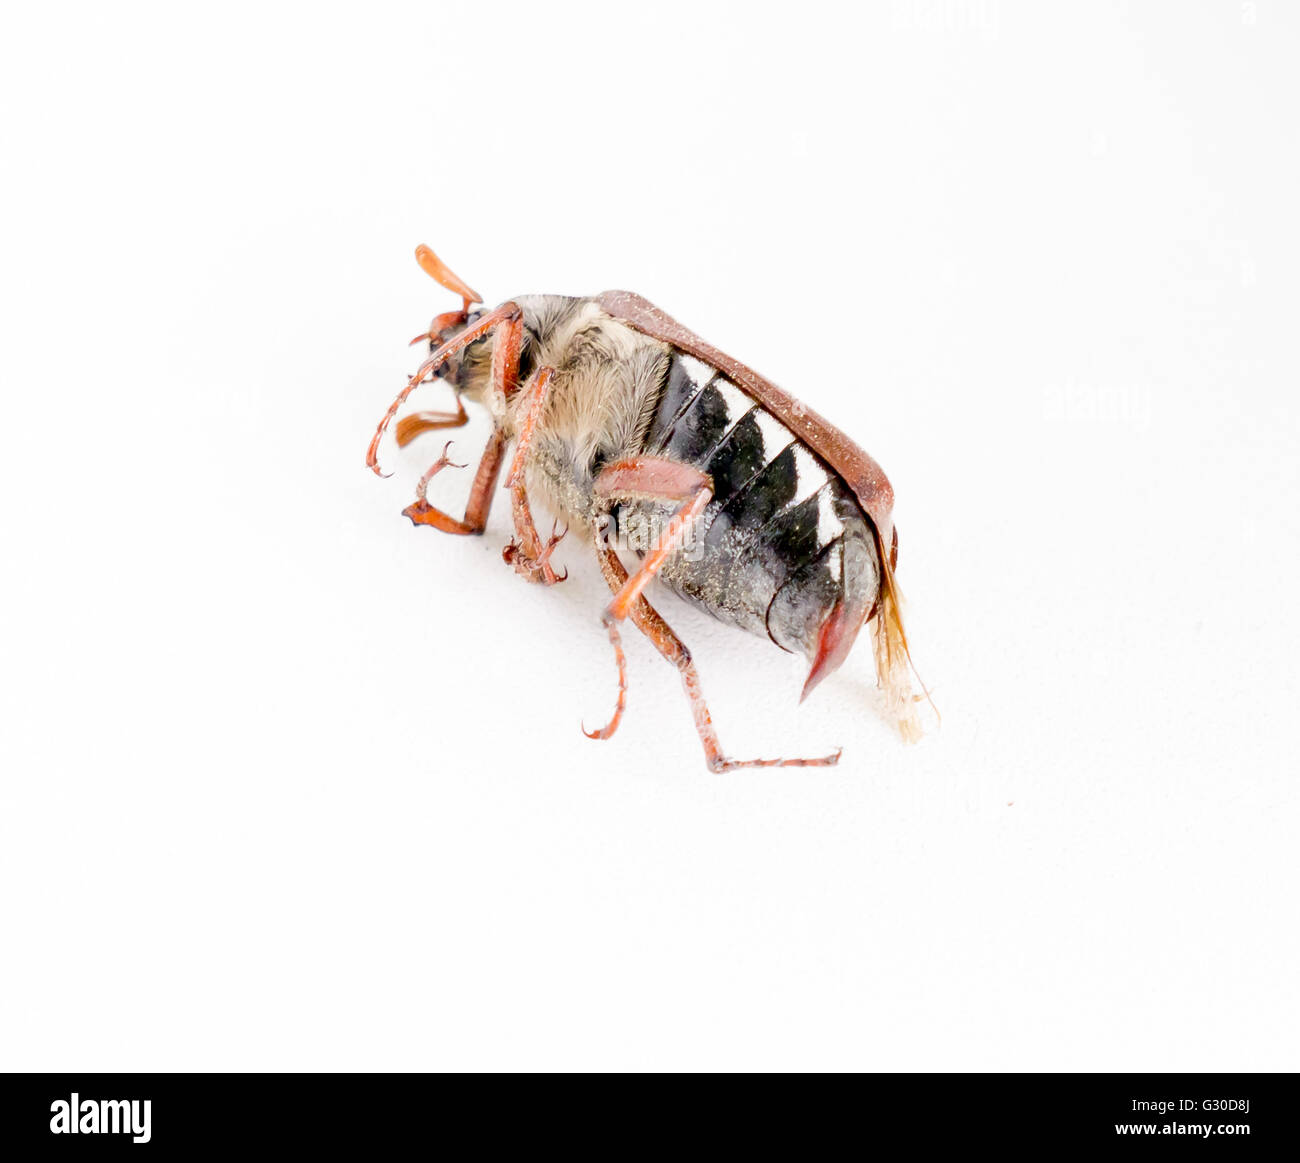 Les morts bug hanneton européen. Banque D'Images